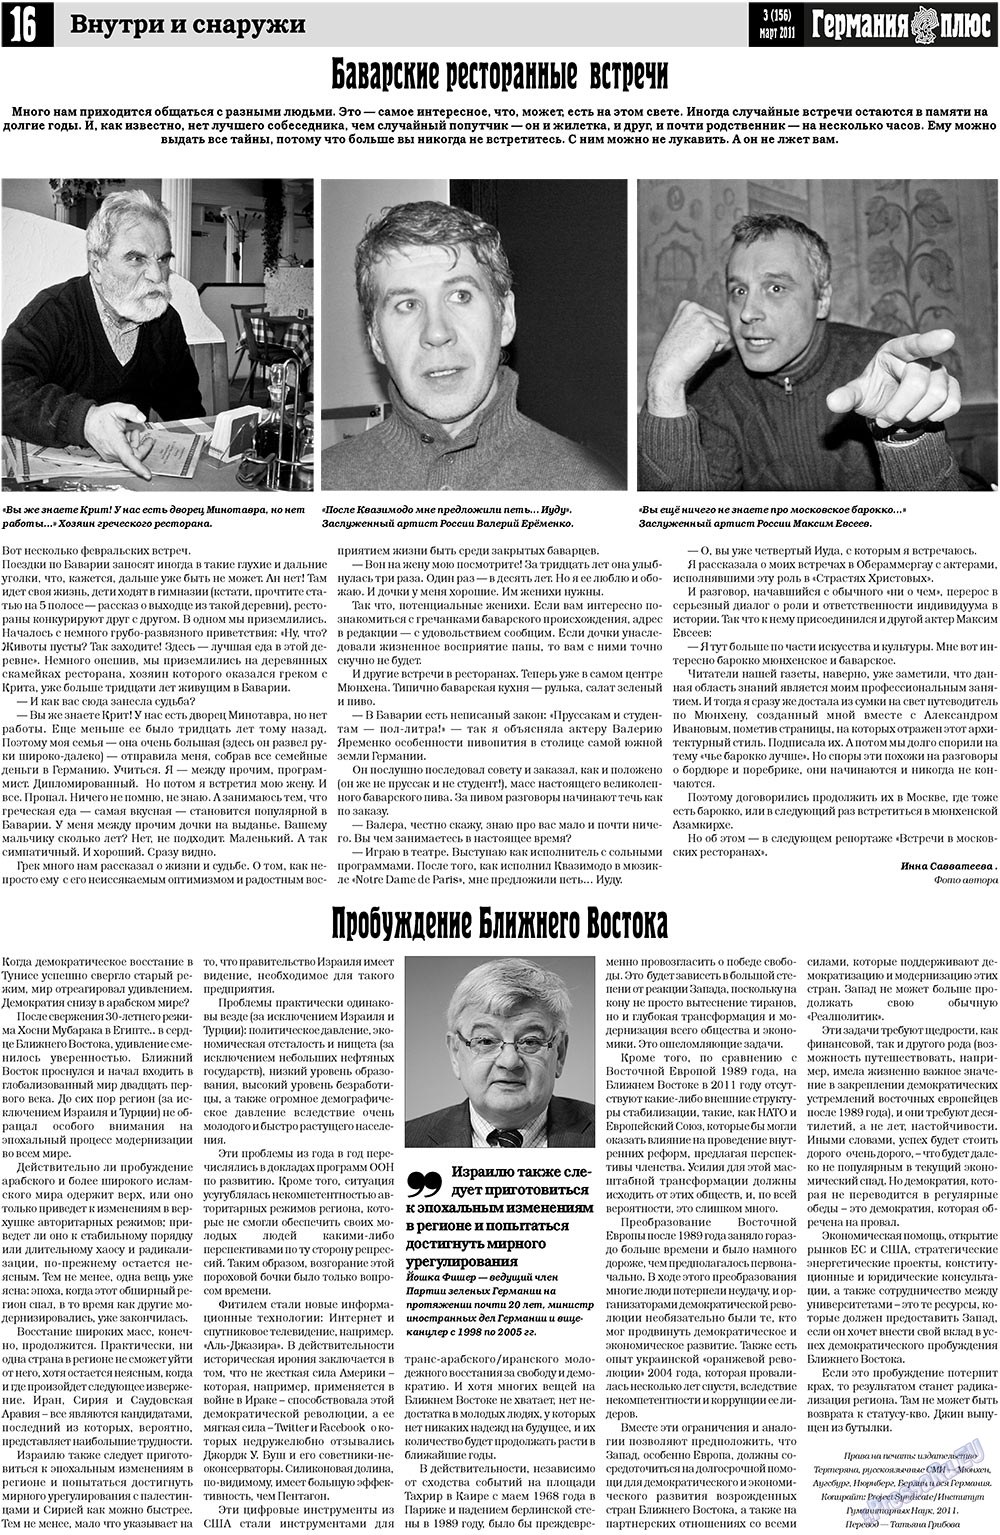 Германия плюс (газета). 2011 год, номер 3, стр. 16